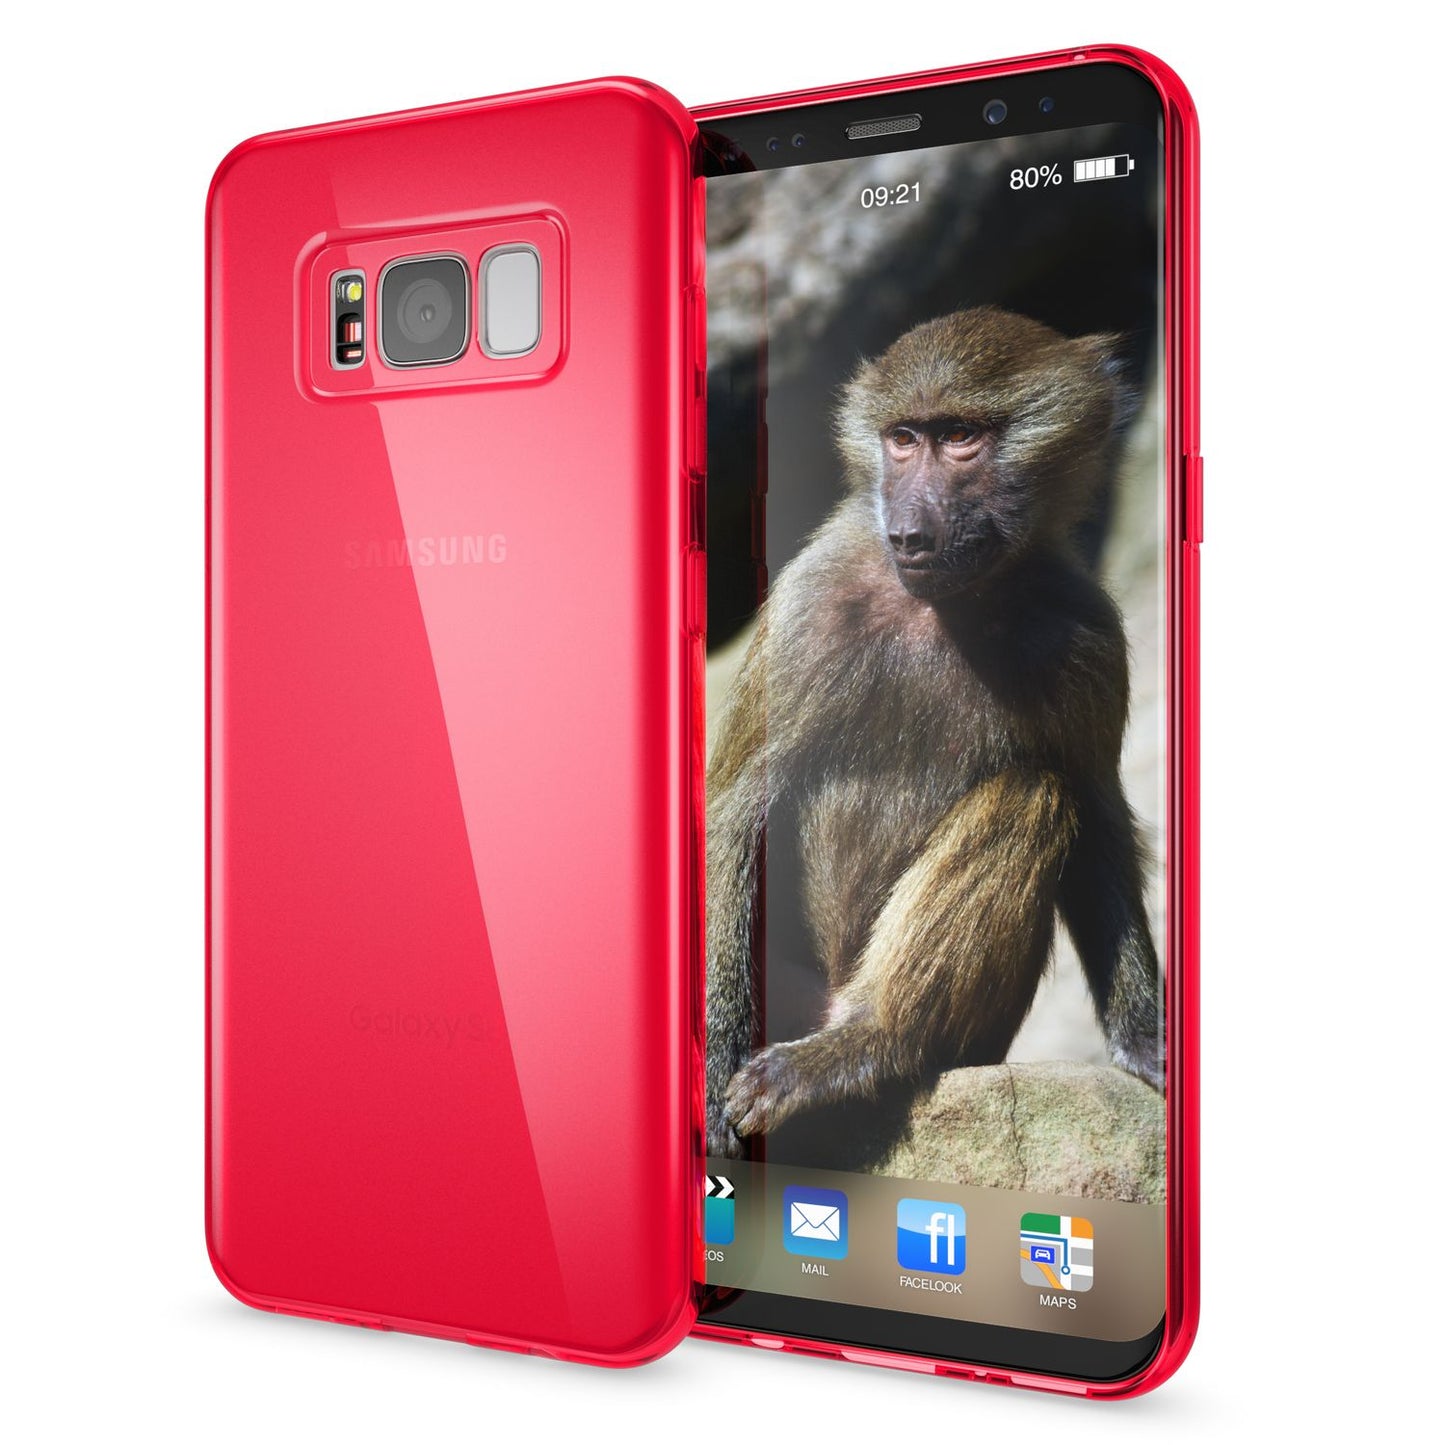 Samsung Galaxy S8 Plus Handy Hülle von NALIA, TPU Silikon Case Cover Schutz Klar